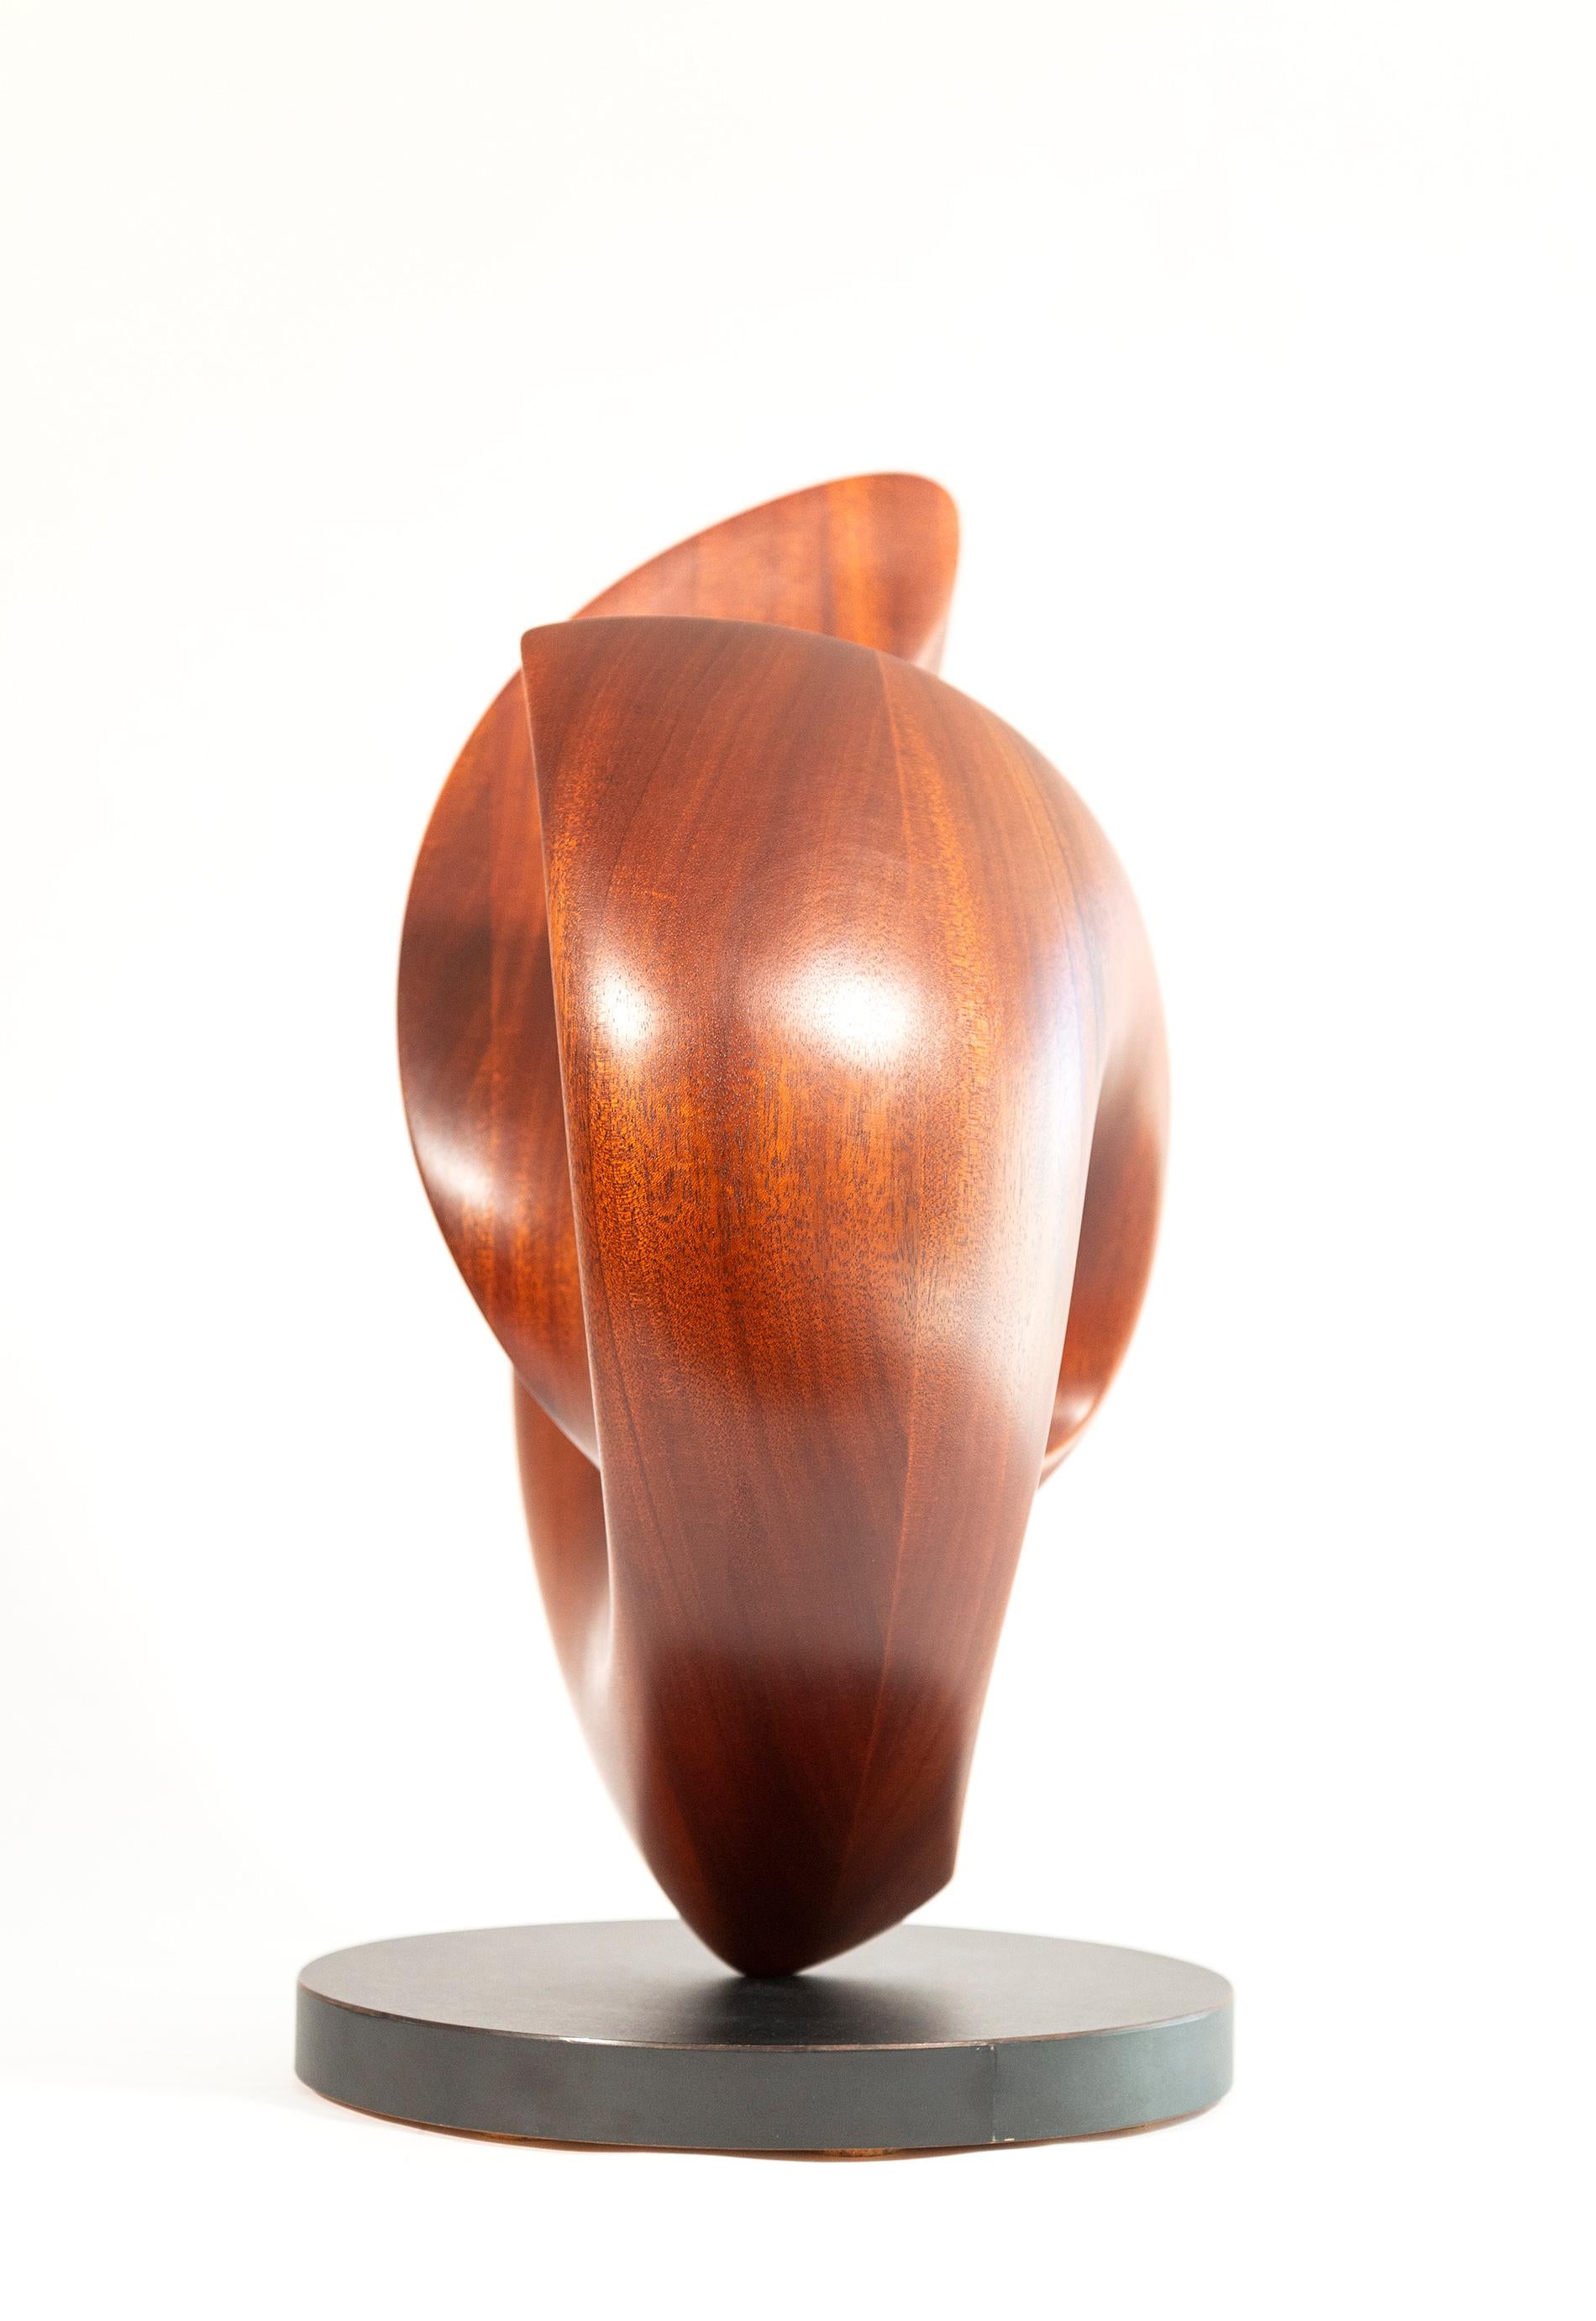 Die anmutigen Kurven dieser zeitgenössischen Skulptur aus massivem Mahagoni von David Chamberlain scheinen das Bild eines Herzens nachzuahmen. Handgeschnitzt aus einem Stück dieses seltenen Holzes; die abstrakte Form ist eine durchgehende Schleife.